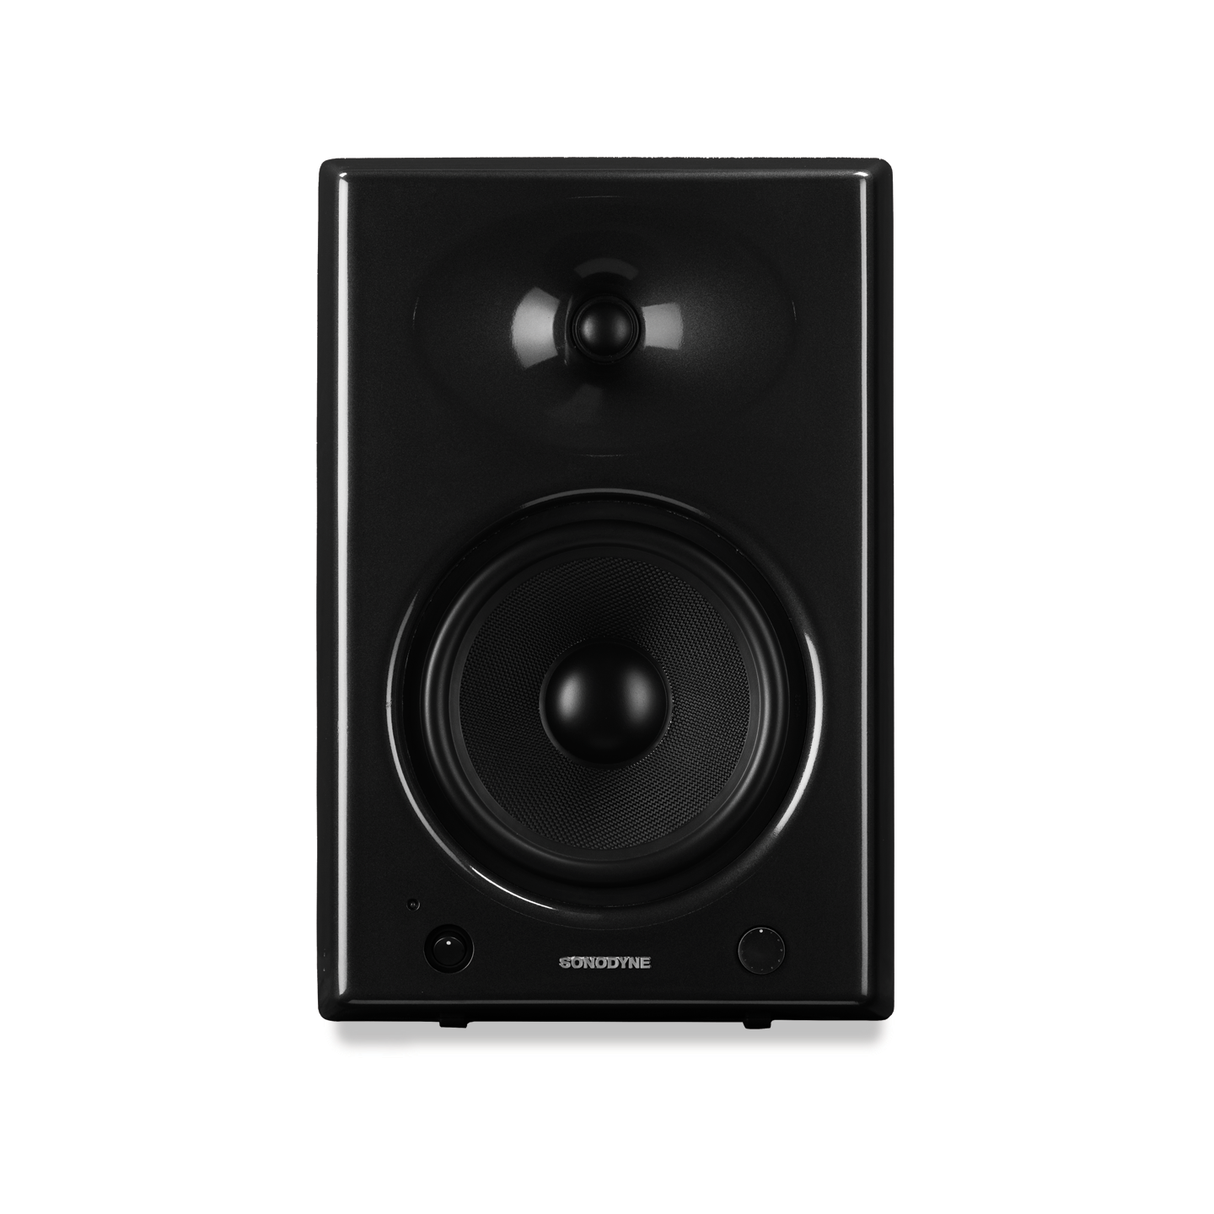 Sonodyne SRP-205 Active/ Powered Speakers (Black) (Pair)